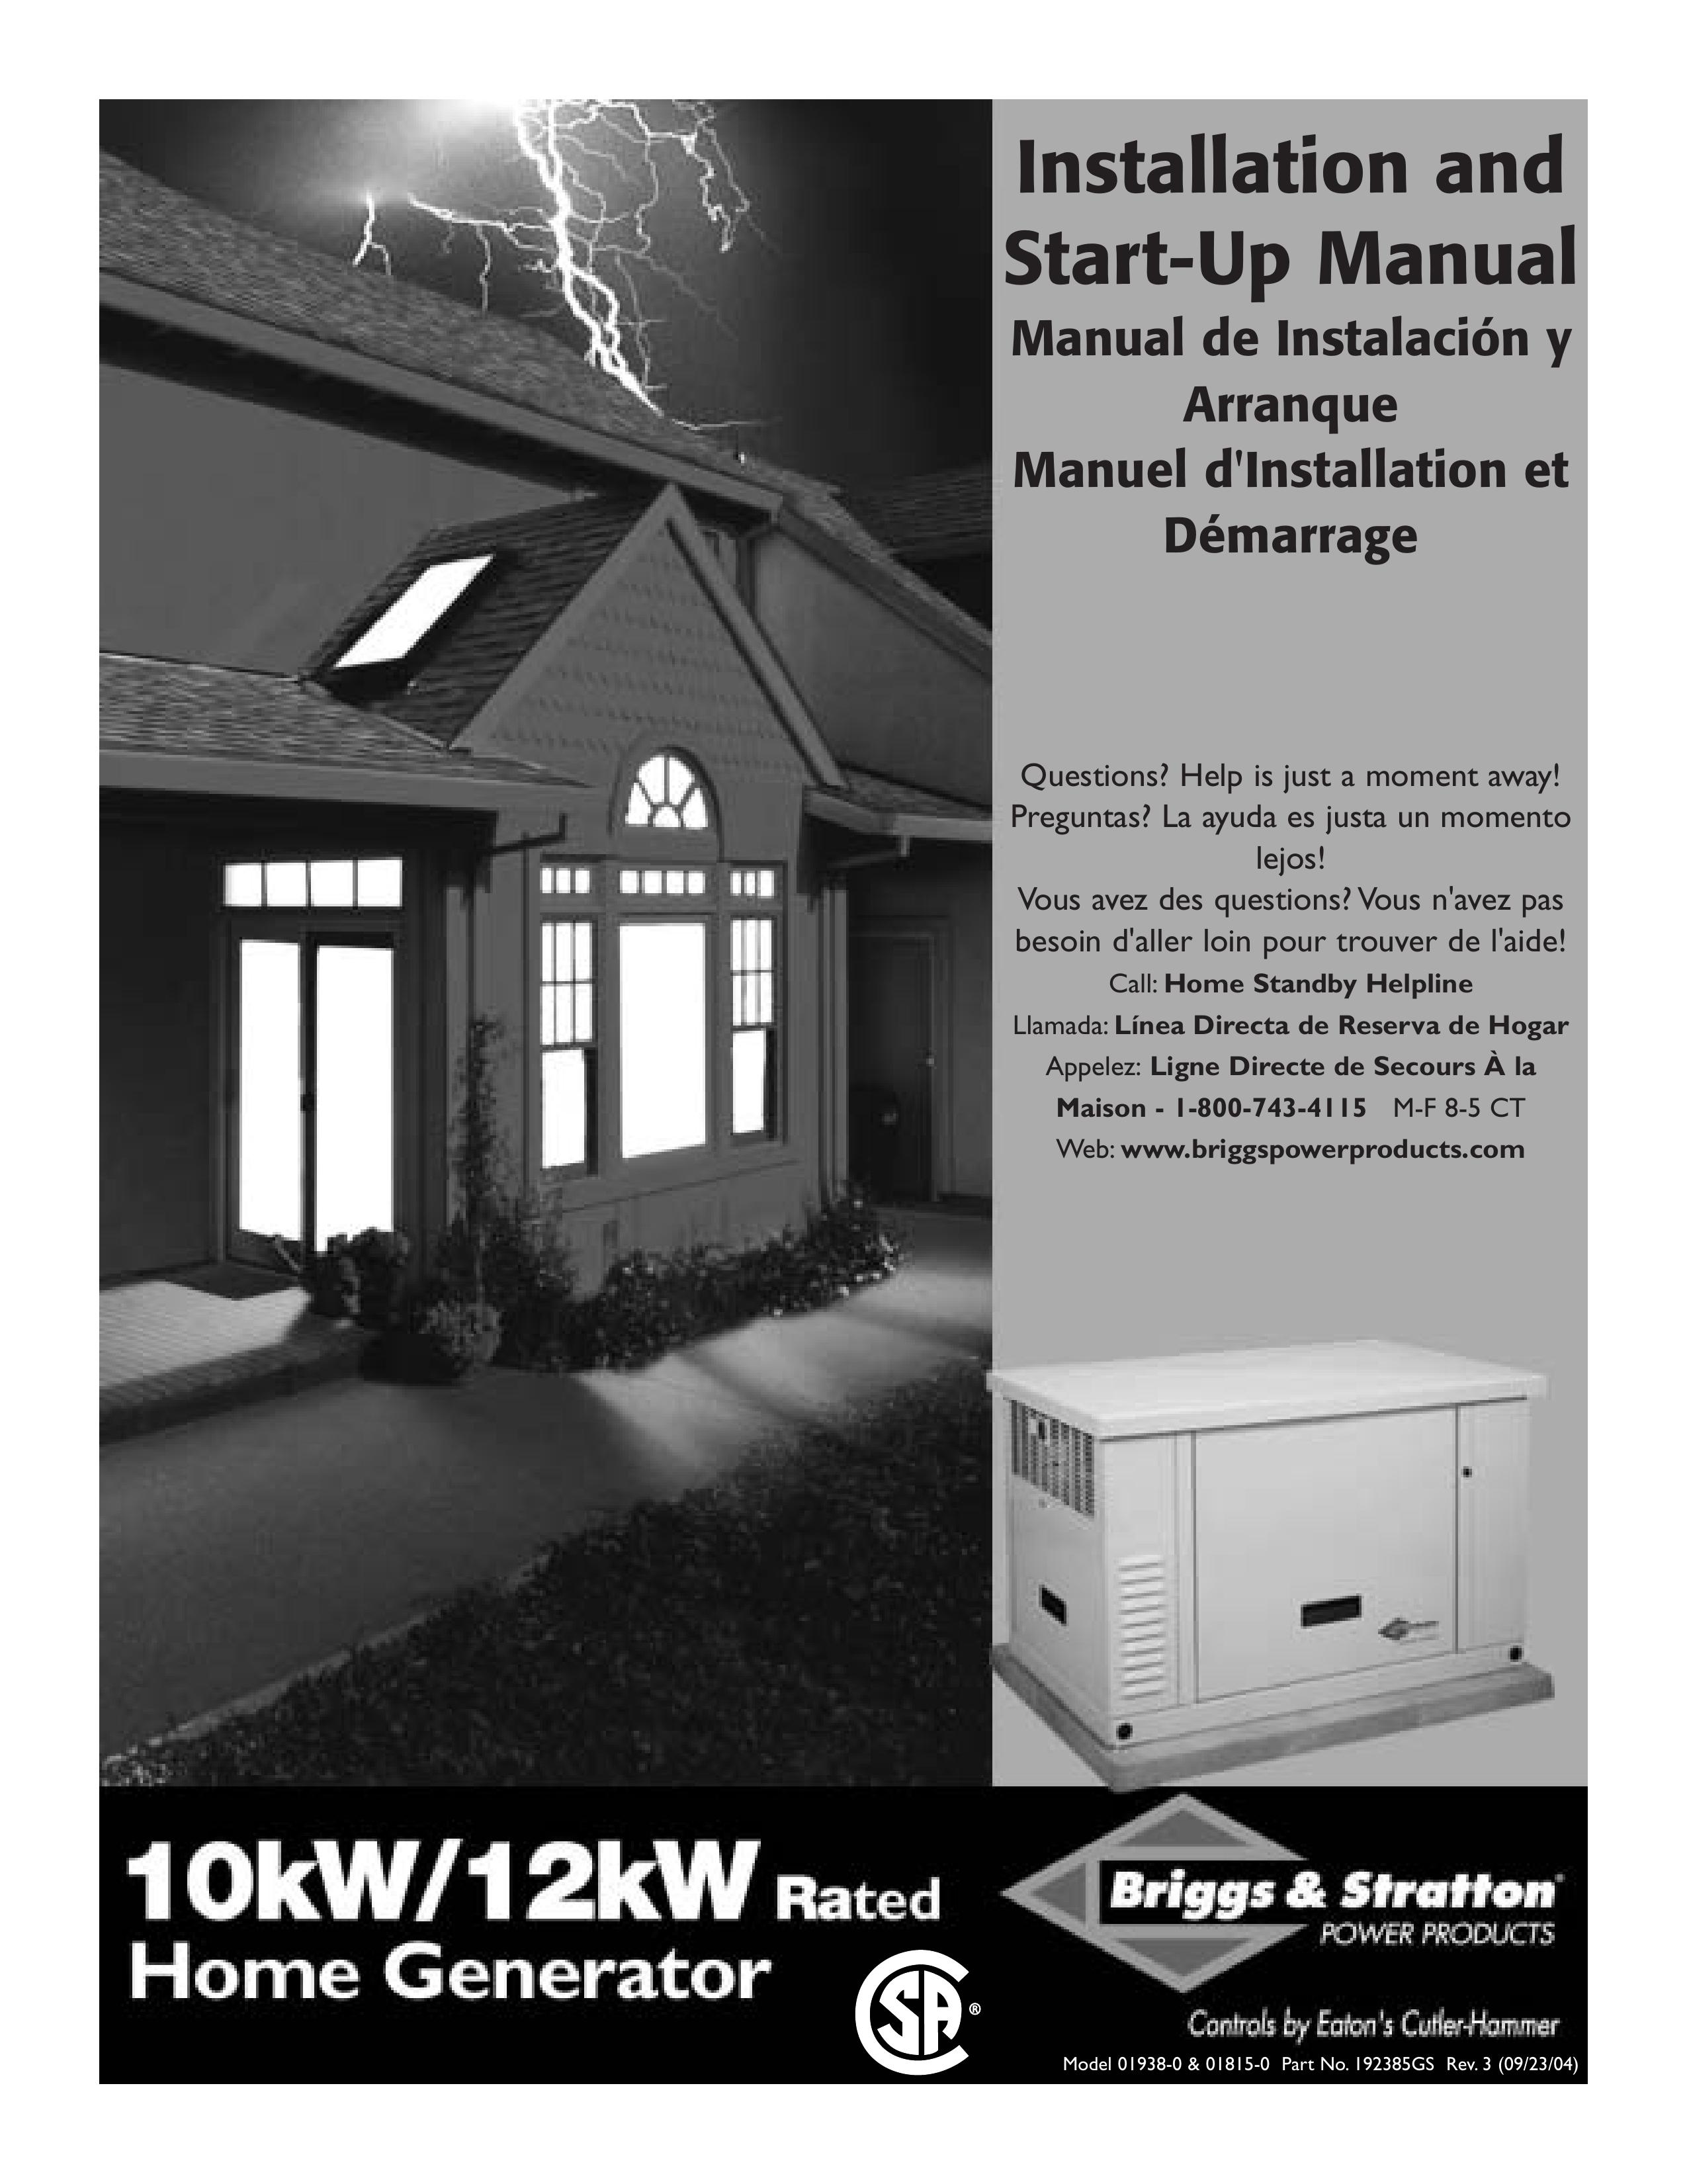 Briggs & Stratton 01938-0 Portable Generator User Manual